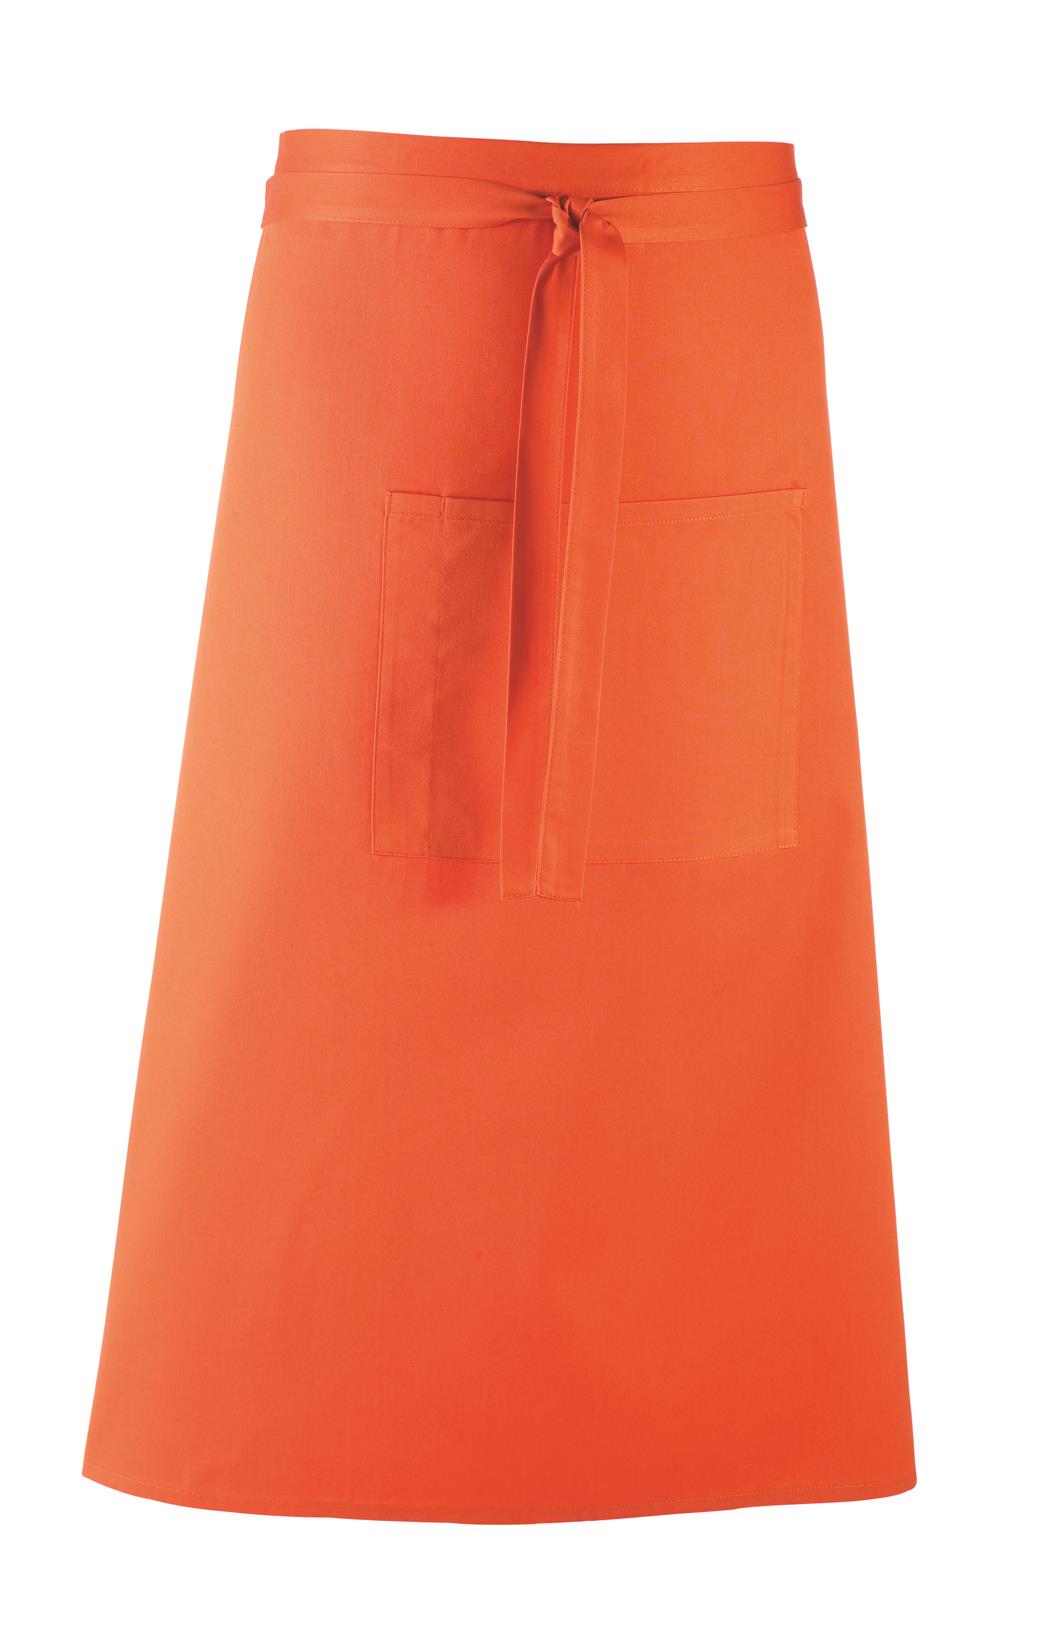 Colors Bistro apron 90 x 80 cm Premier® Orange (Pantone 1655)